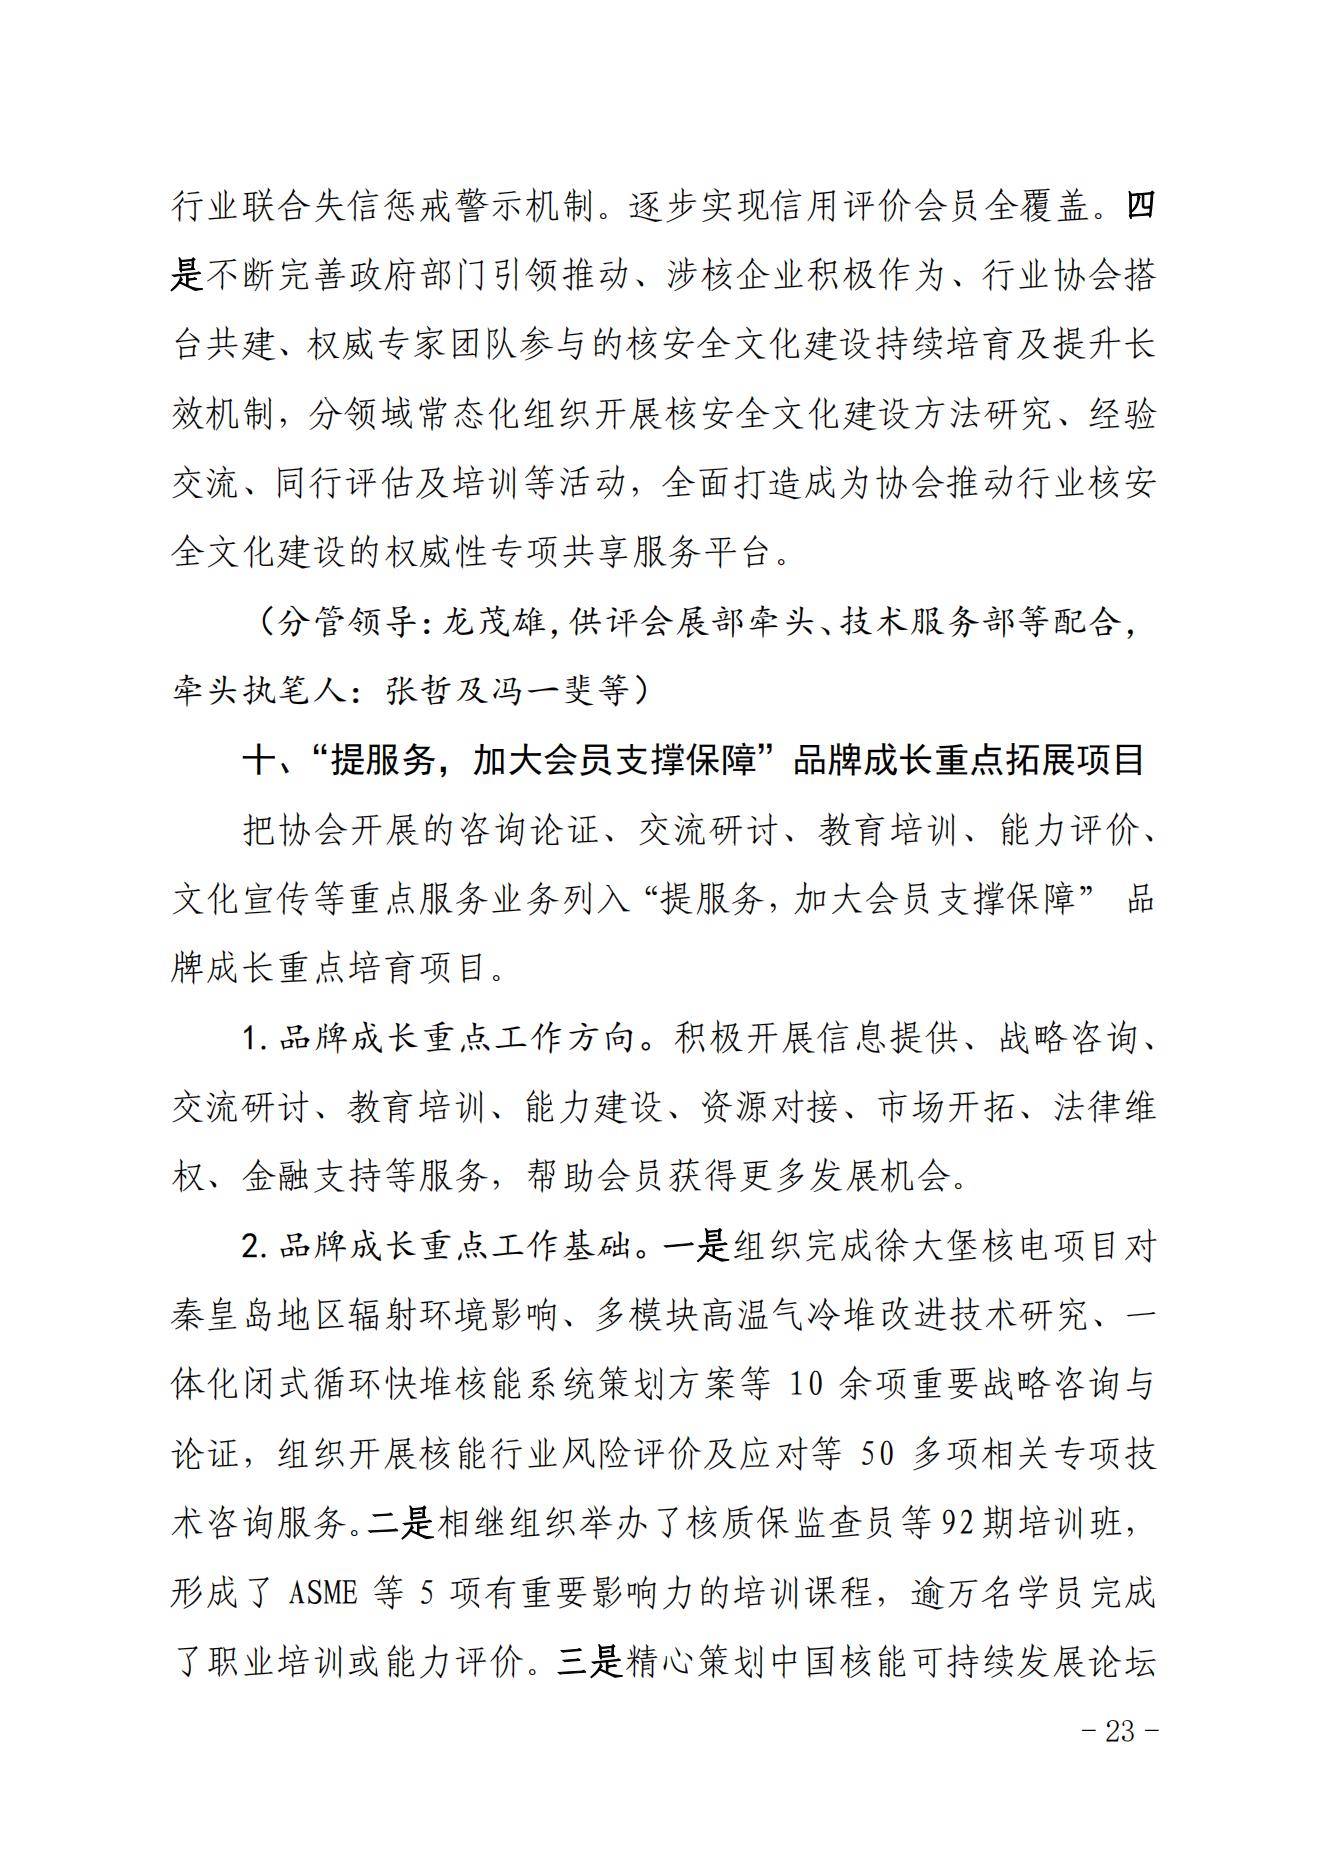 关于印发《中国核能行业协会“品牌协会成长计划”实施方案》的通知_22.jpg